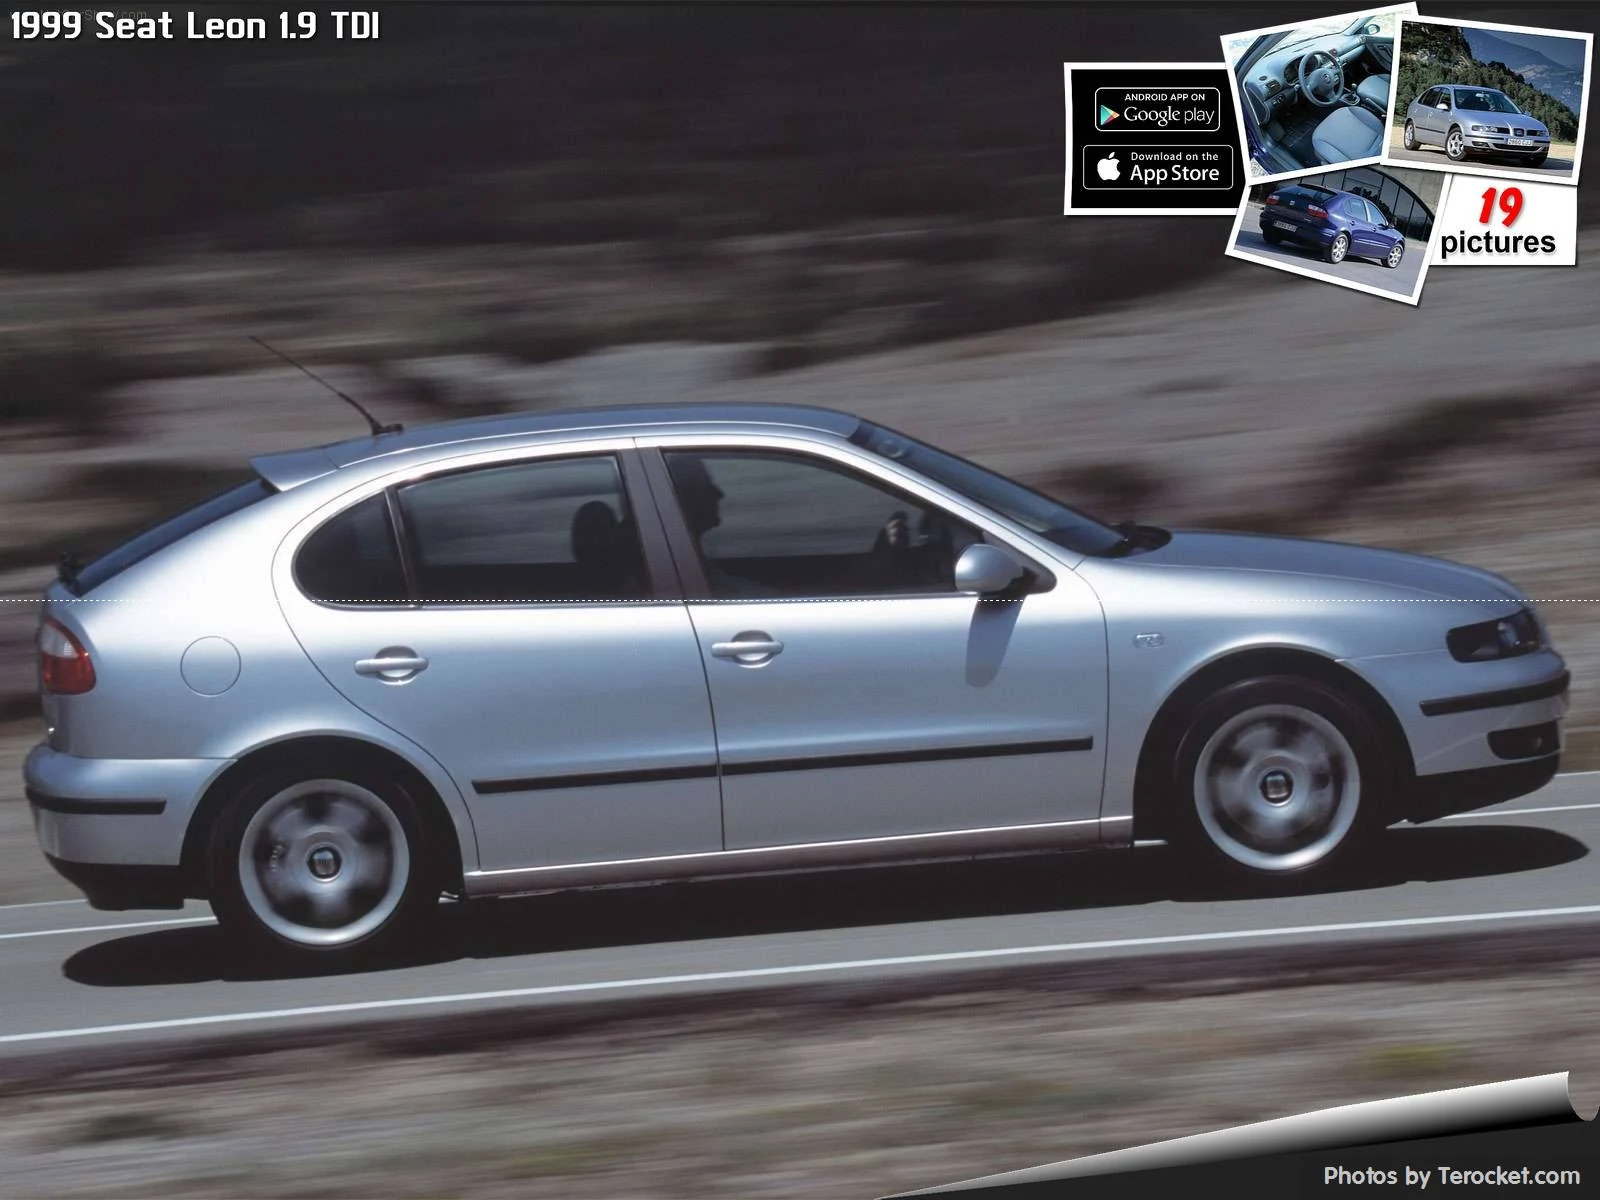 Hình ảnh xe ô tô Seat Leon 1.9 TDI 1999 & nội ngoại thất